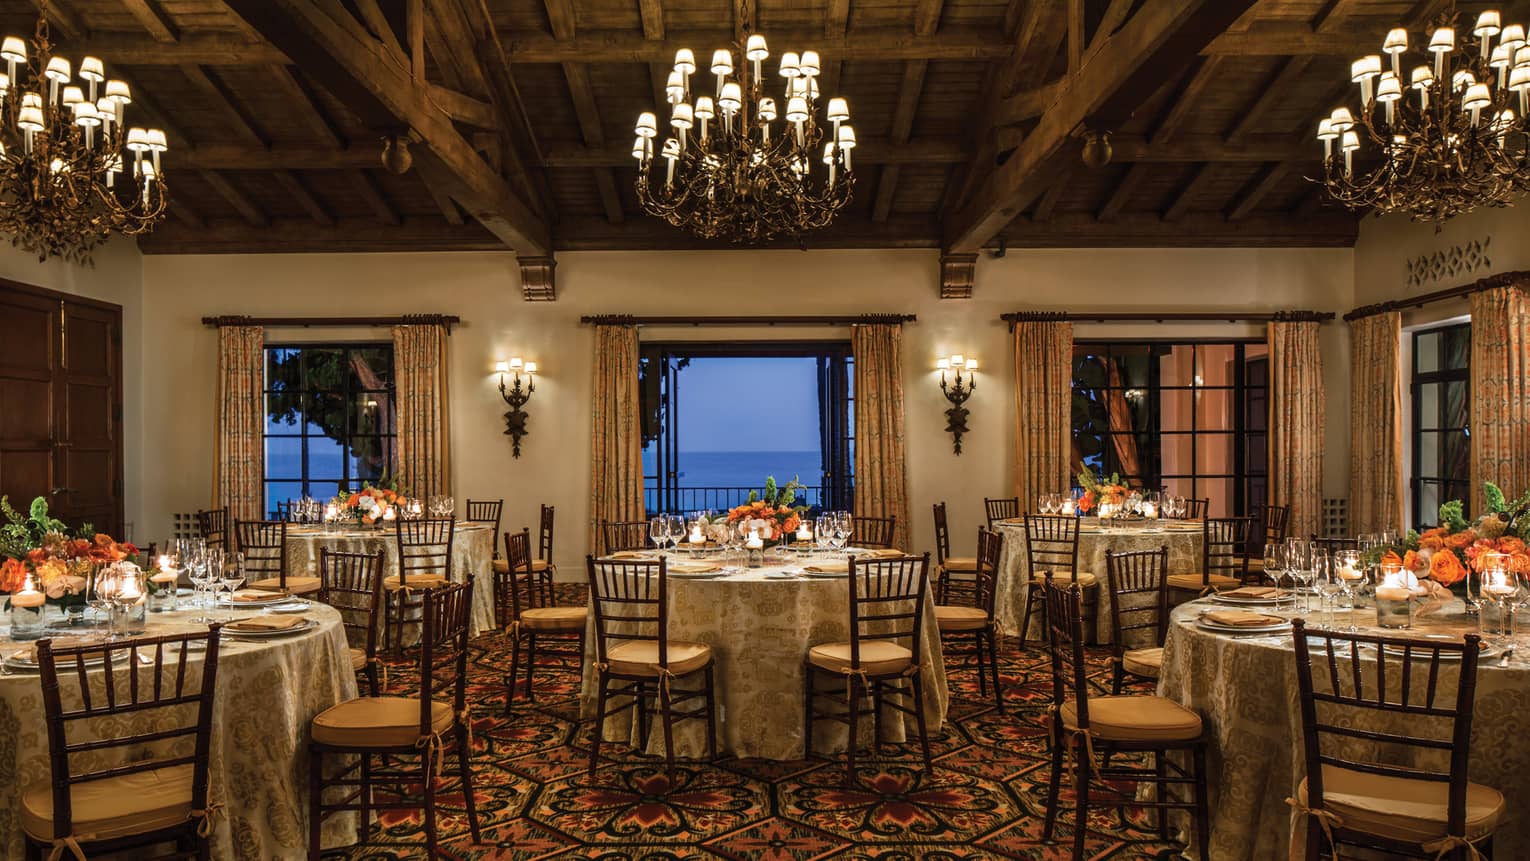 El Mar ballroom with round banquet tables under chandeliers, open patio doors